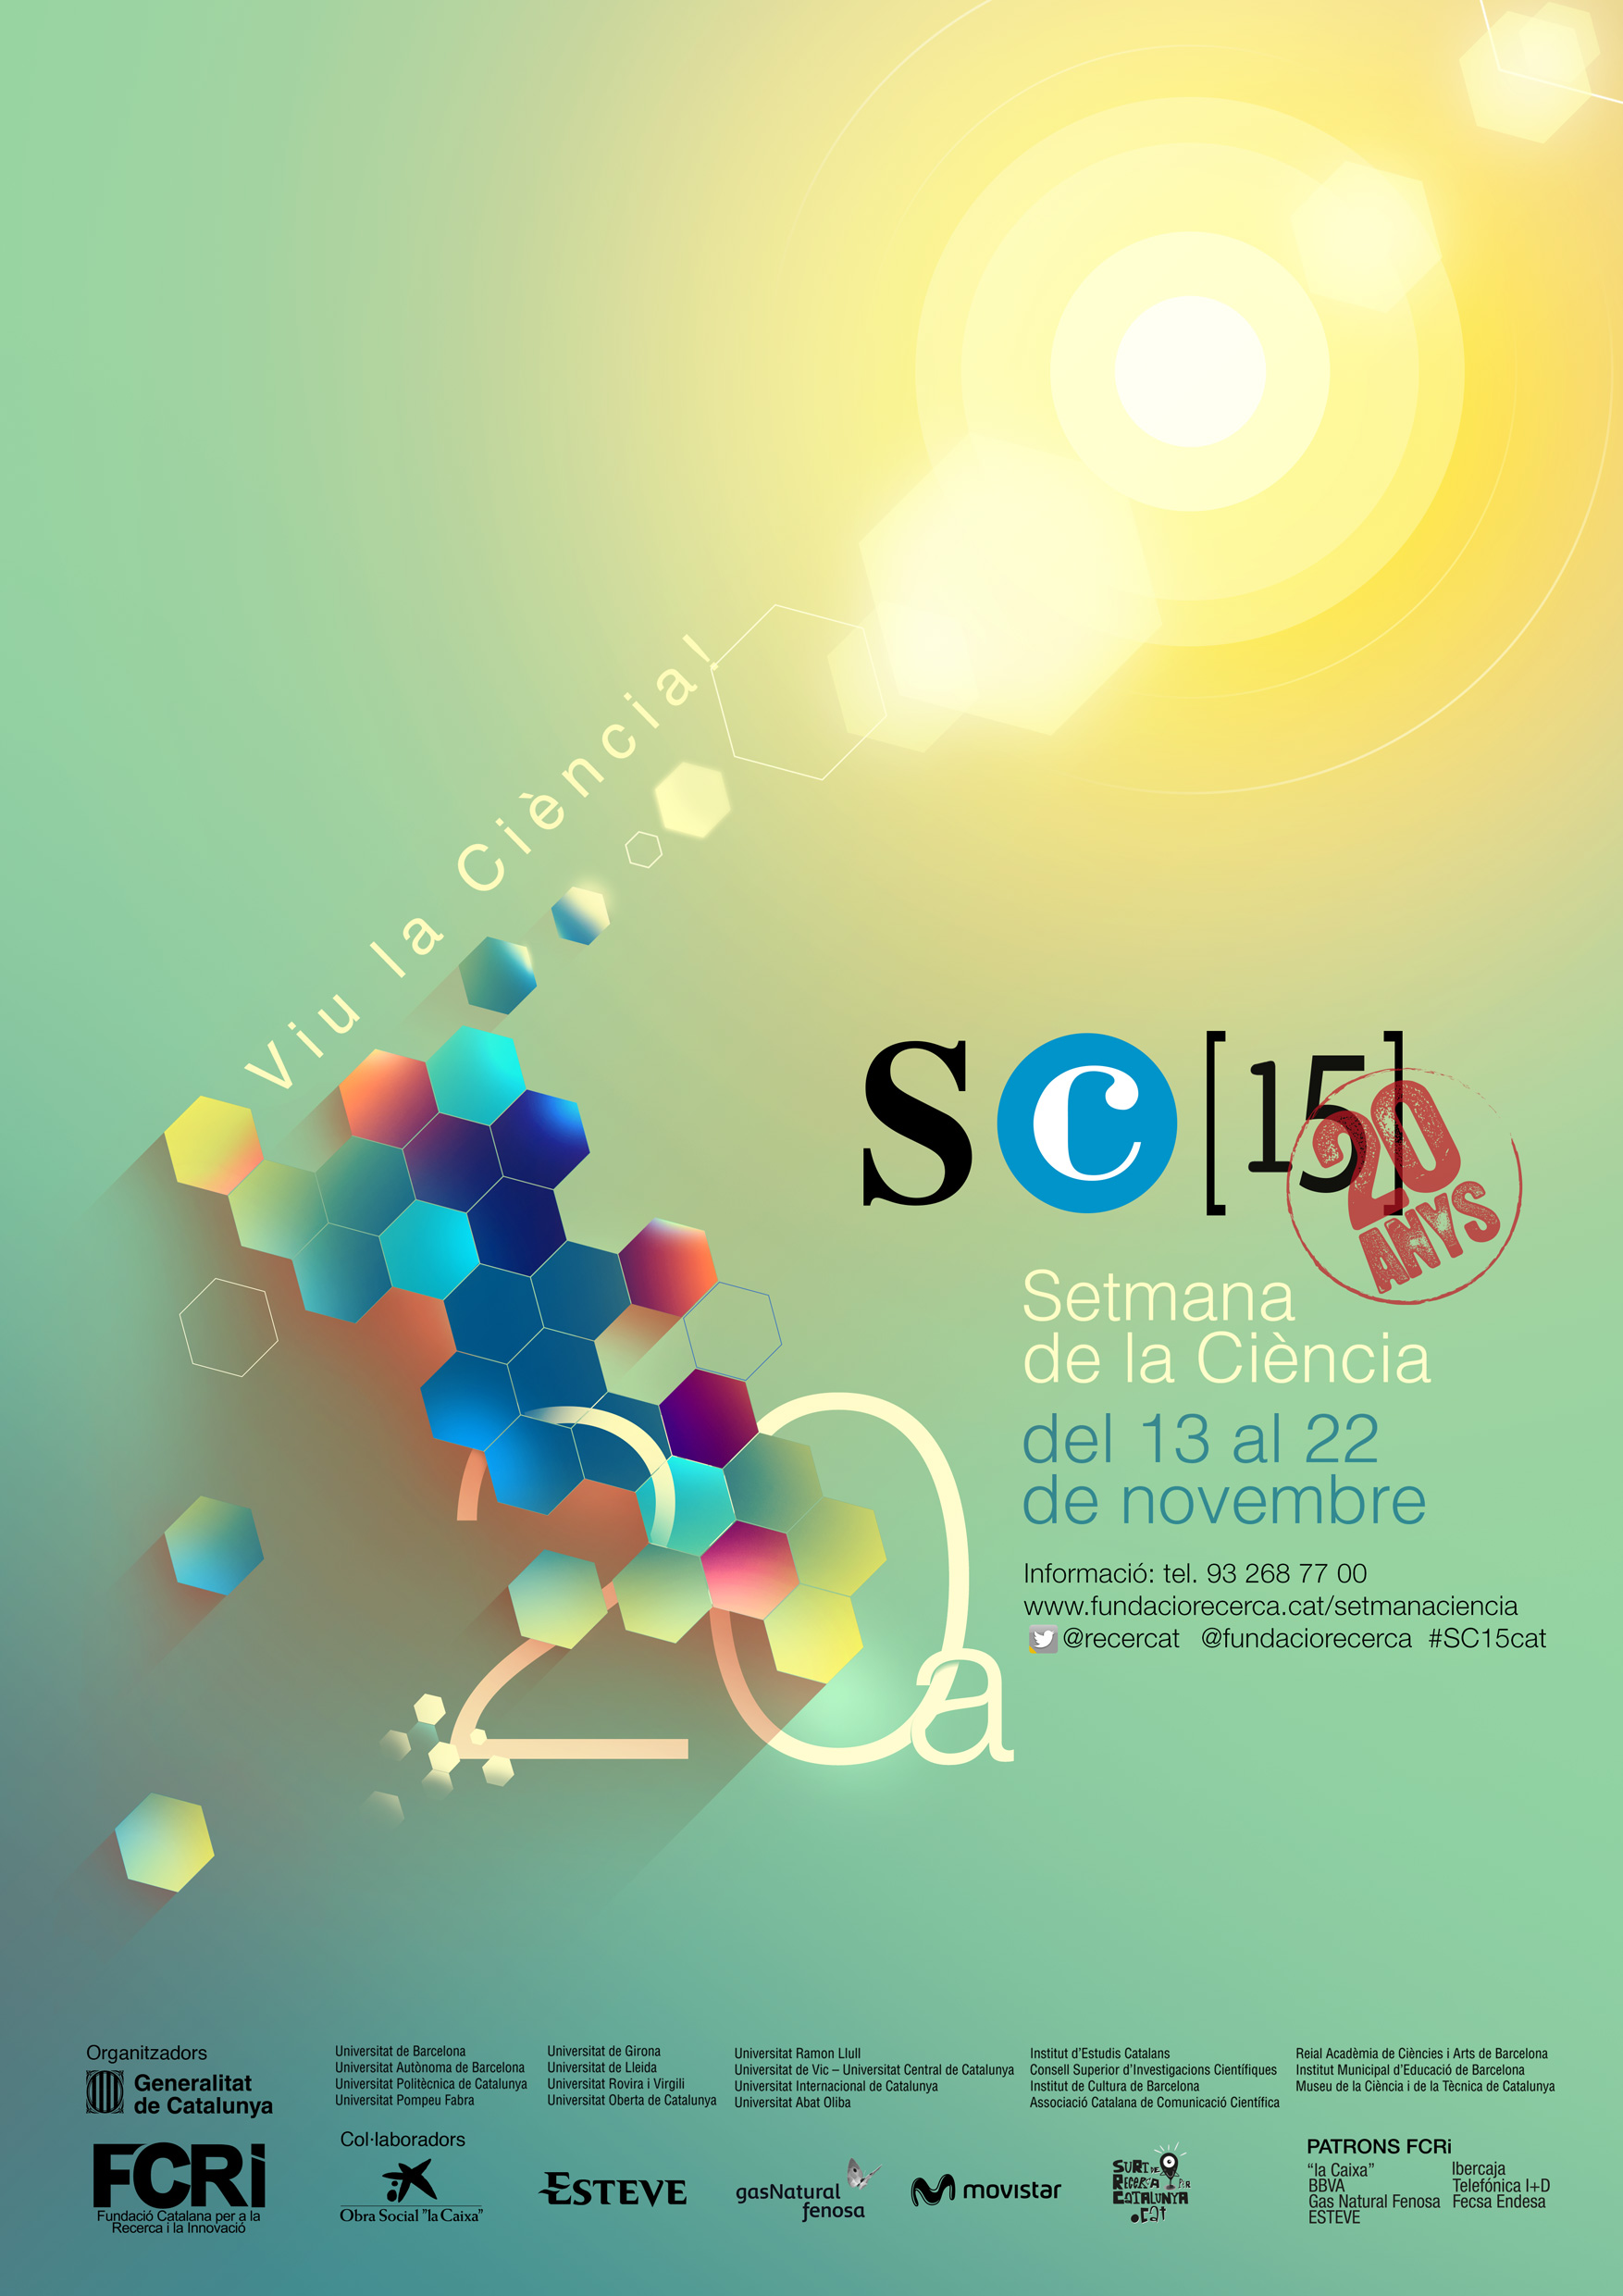 La 20a Setmana de la Ciència tindrà lloc del 13 al 22 de novembre. 